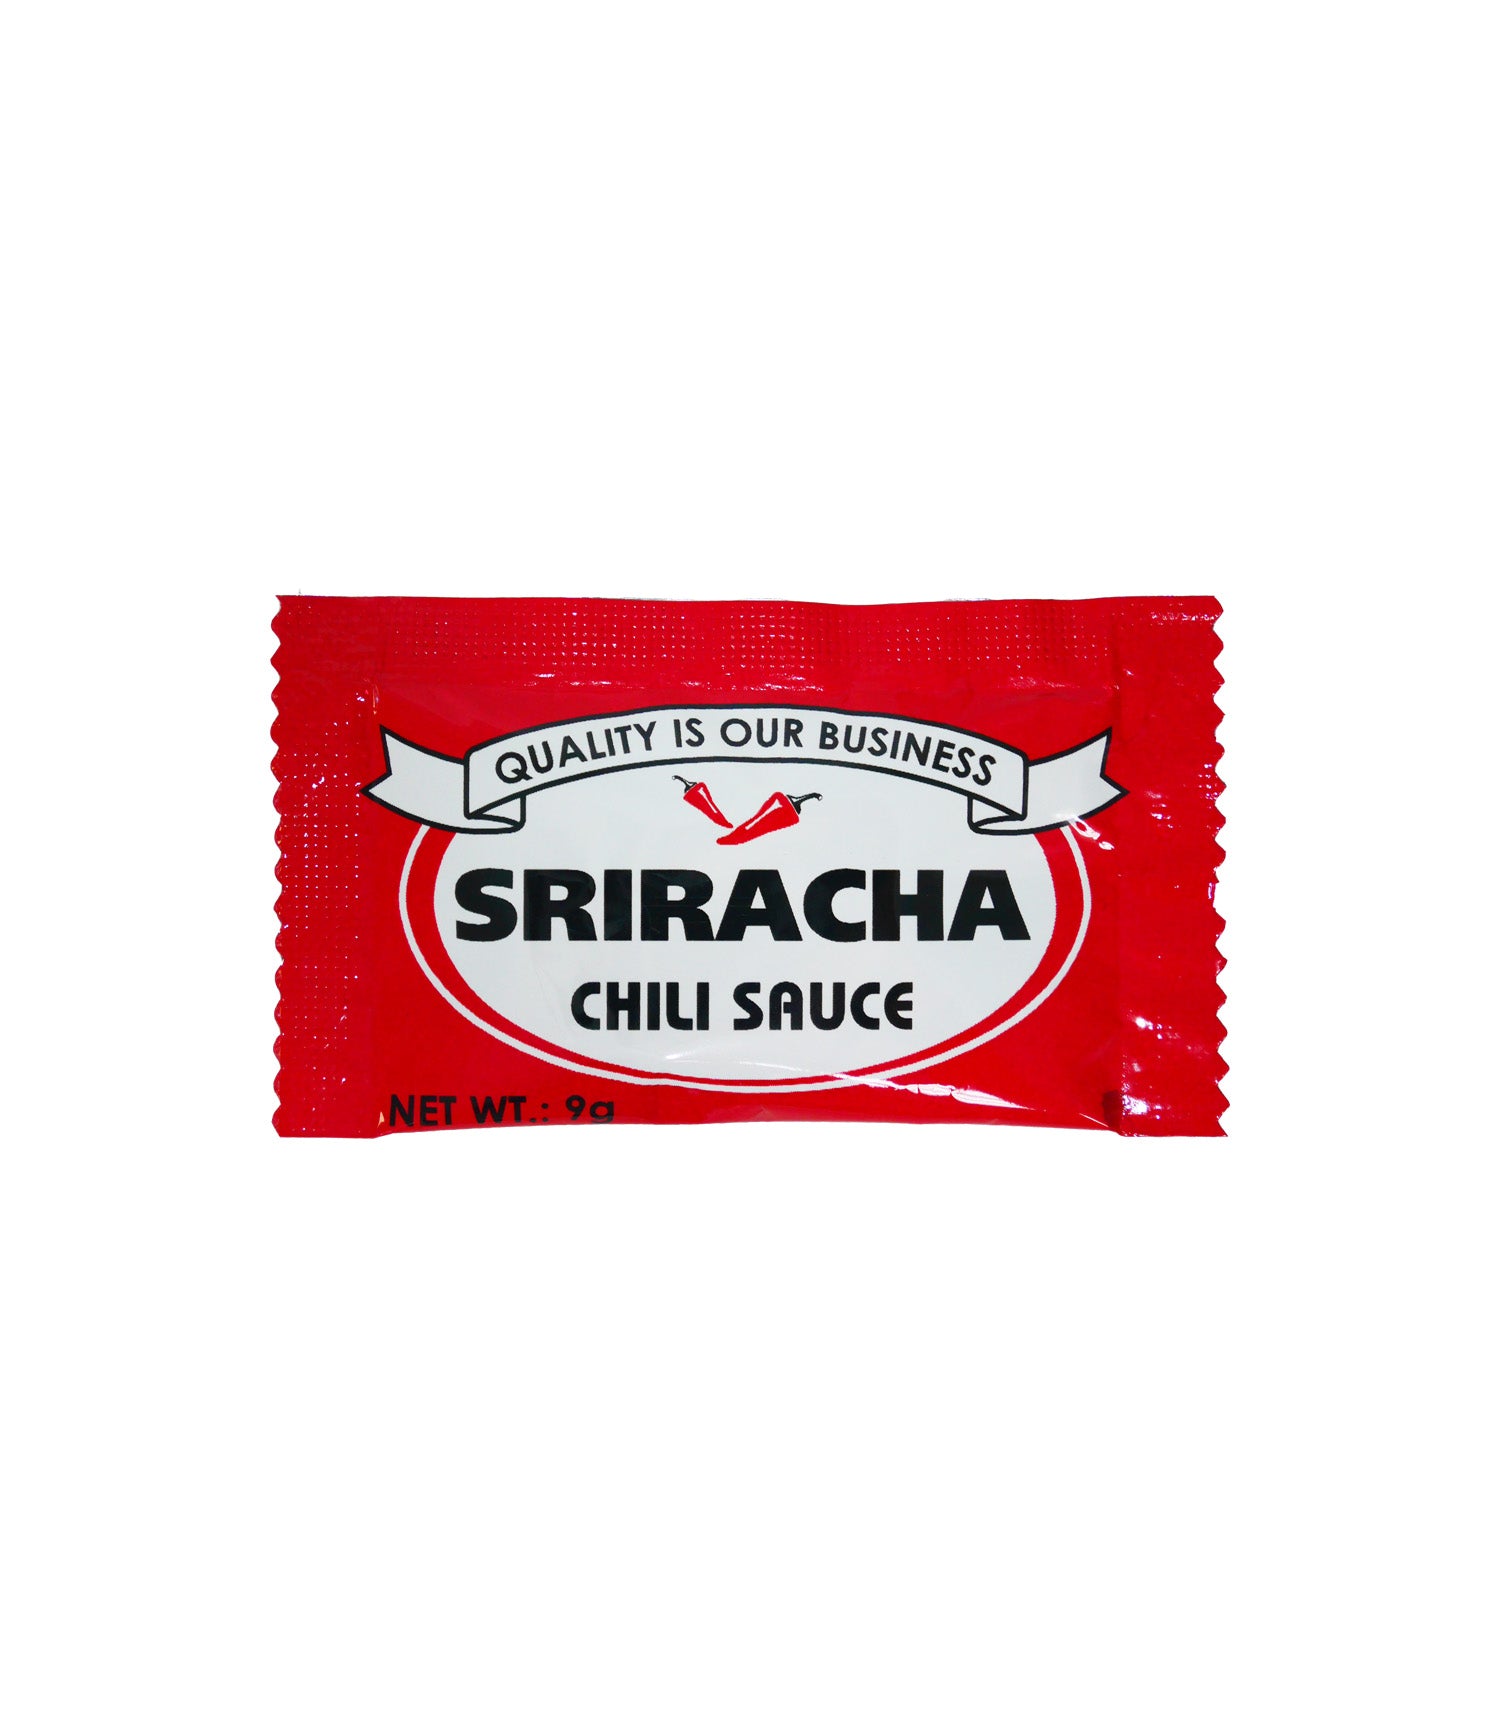 Sriracha Chili Sauce, Our Products